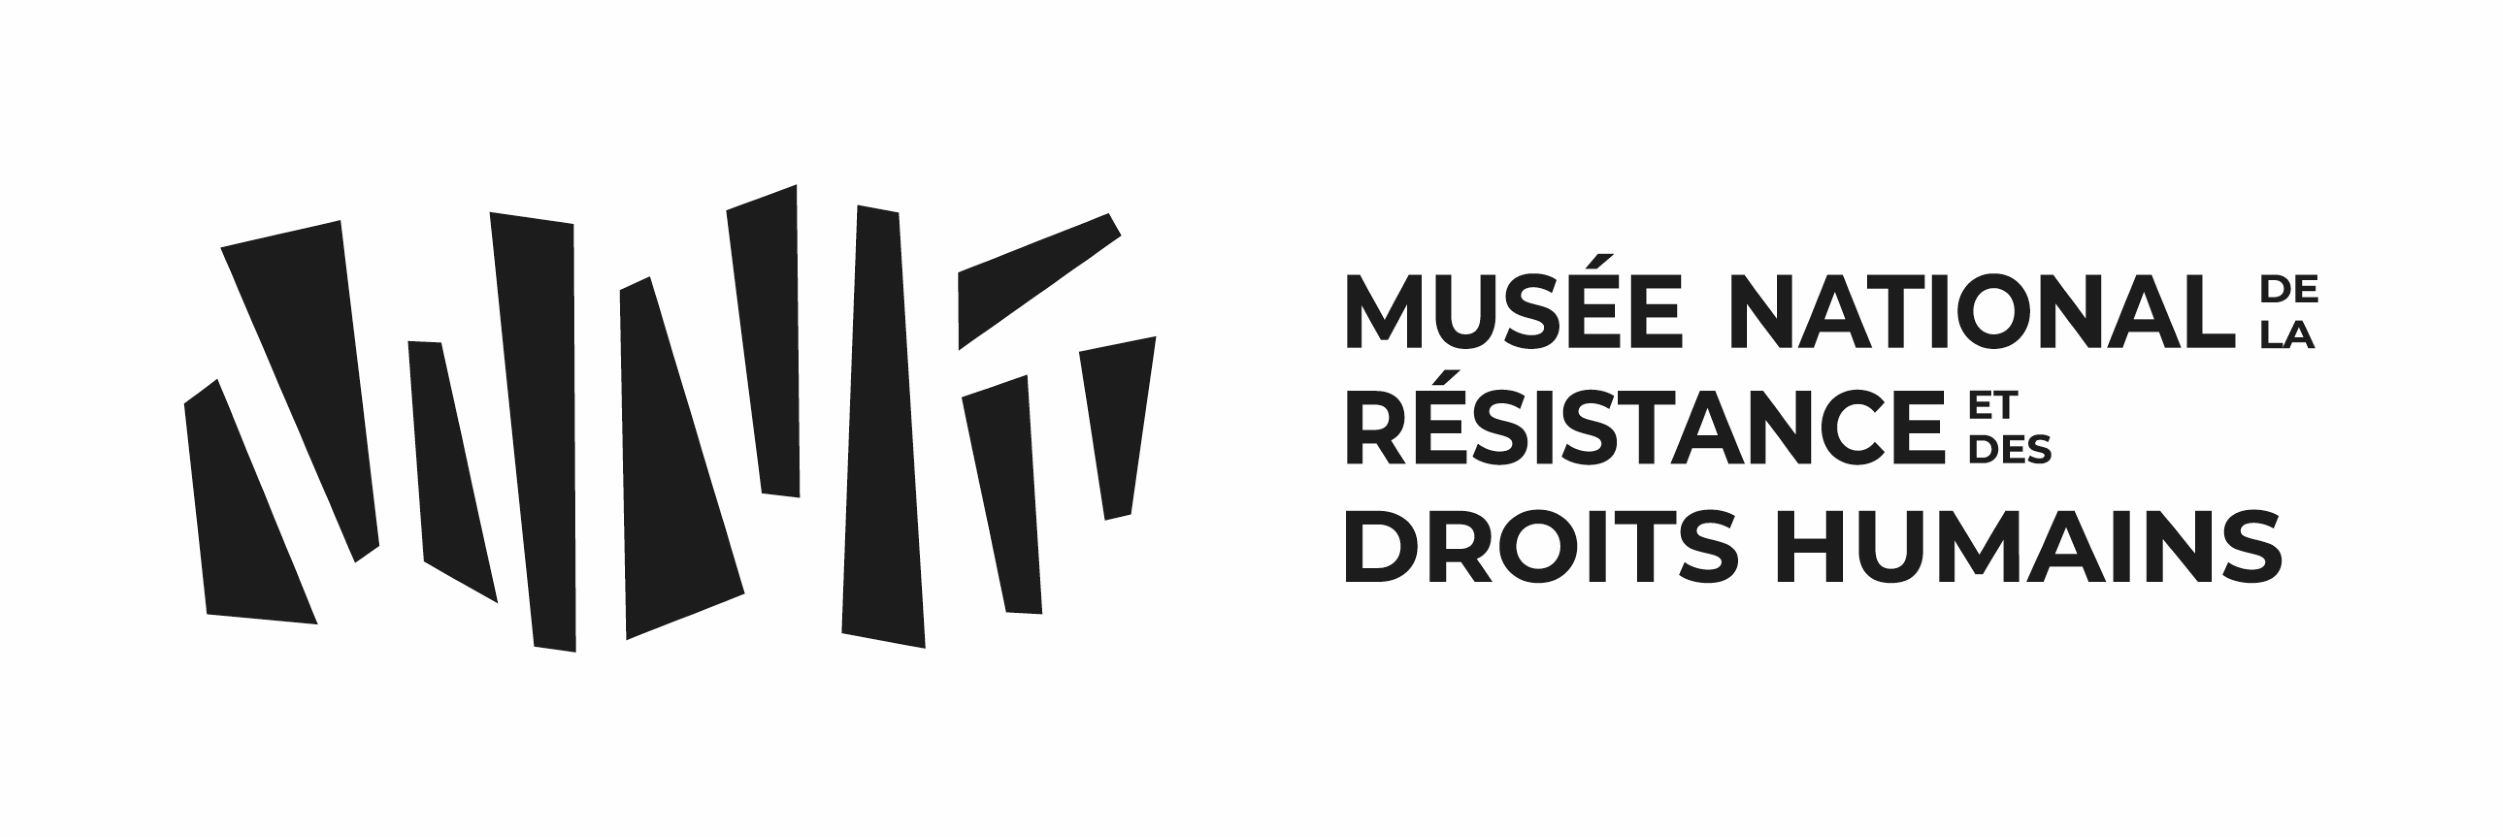 Musée National De La Résistance Et Des Droits Humains